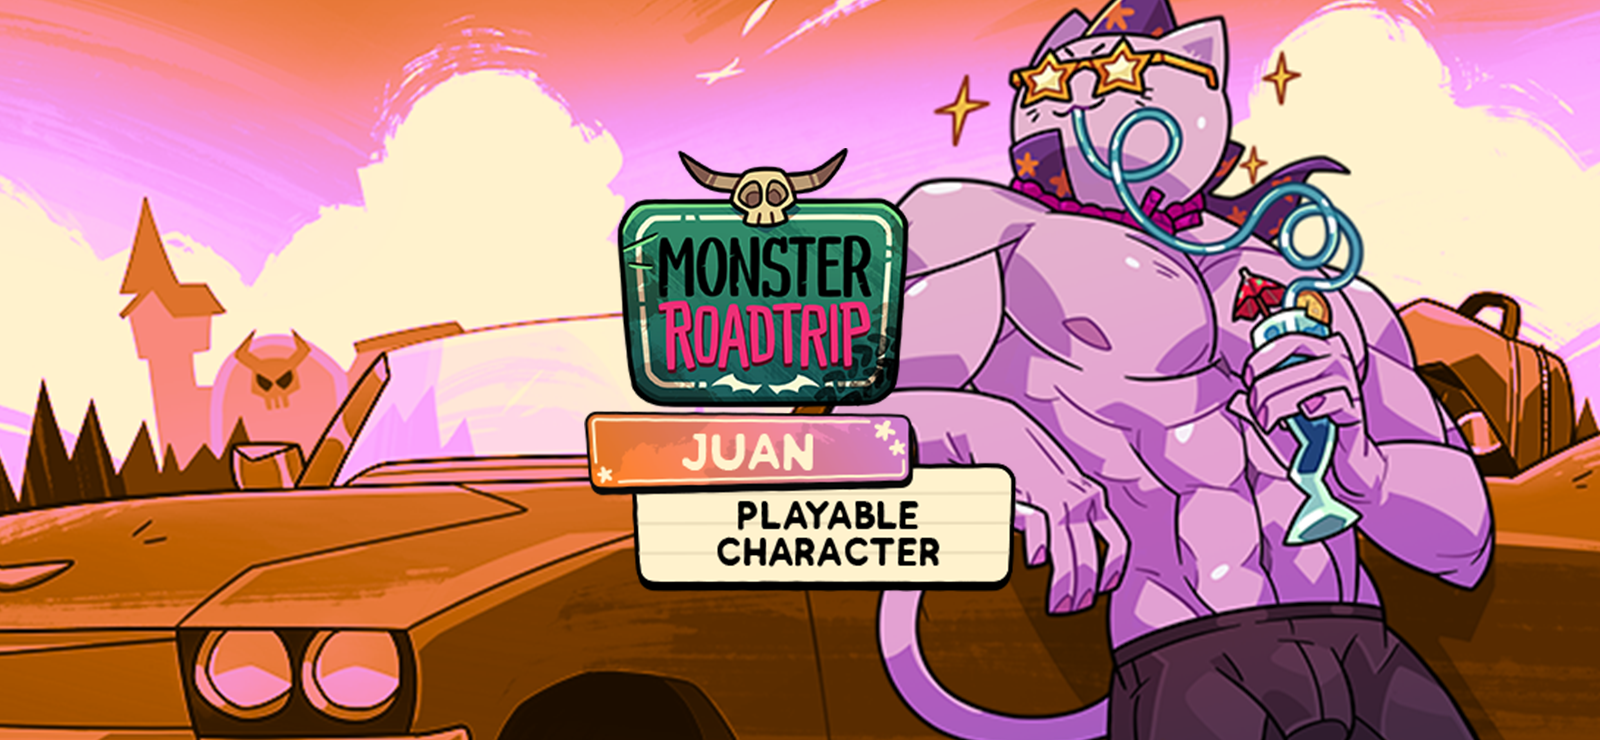 Monster Roadtrip - Playable Character - Juan